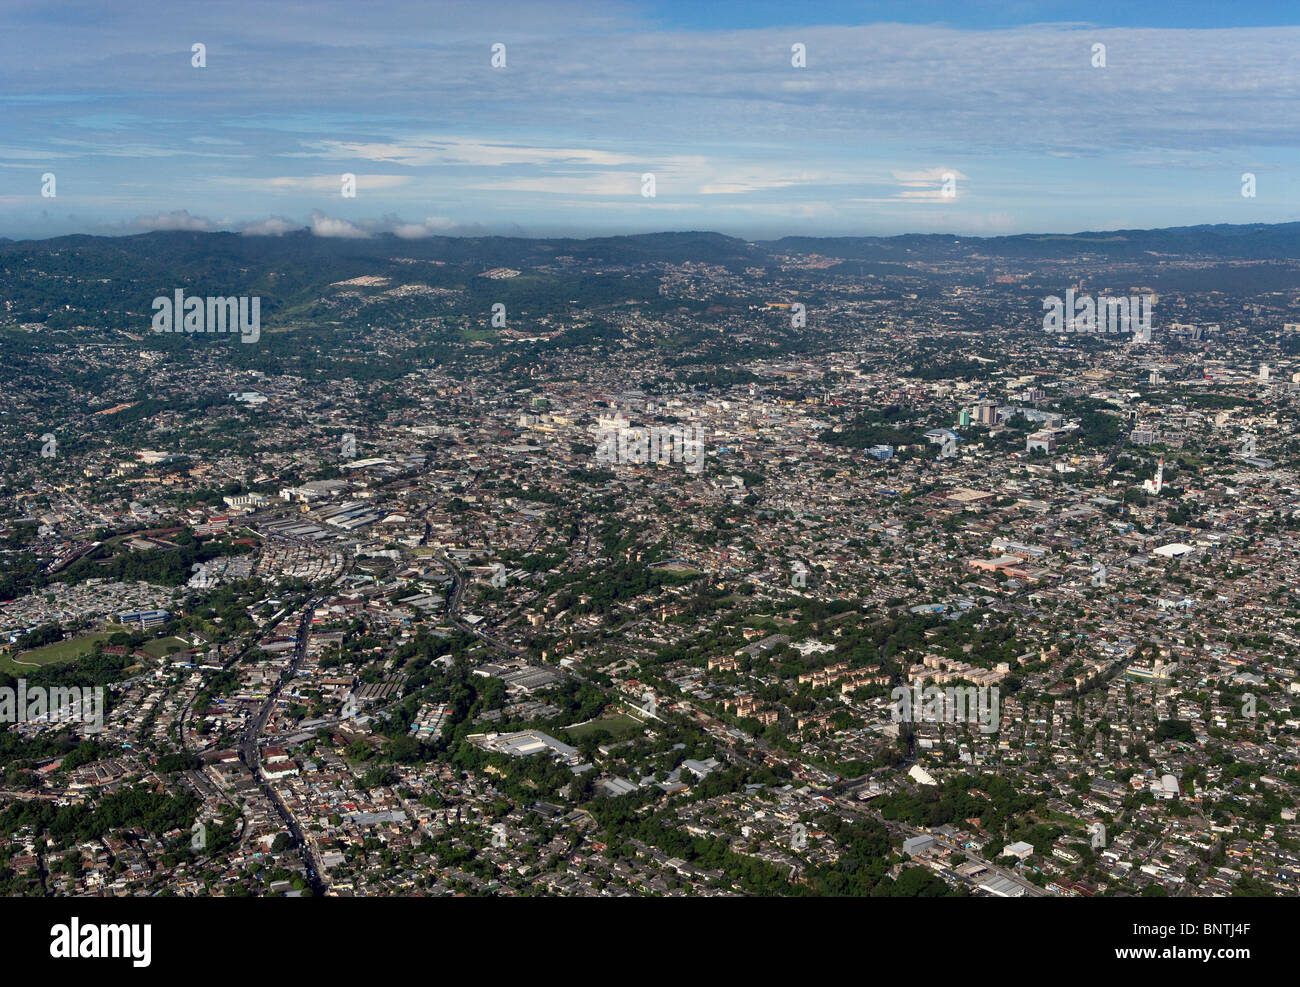 Vue aérienne au-dessus de San Salvador El Salvador Amérique centrale Banque D'Images